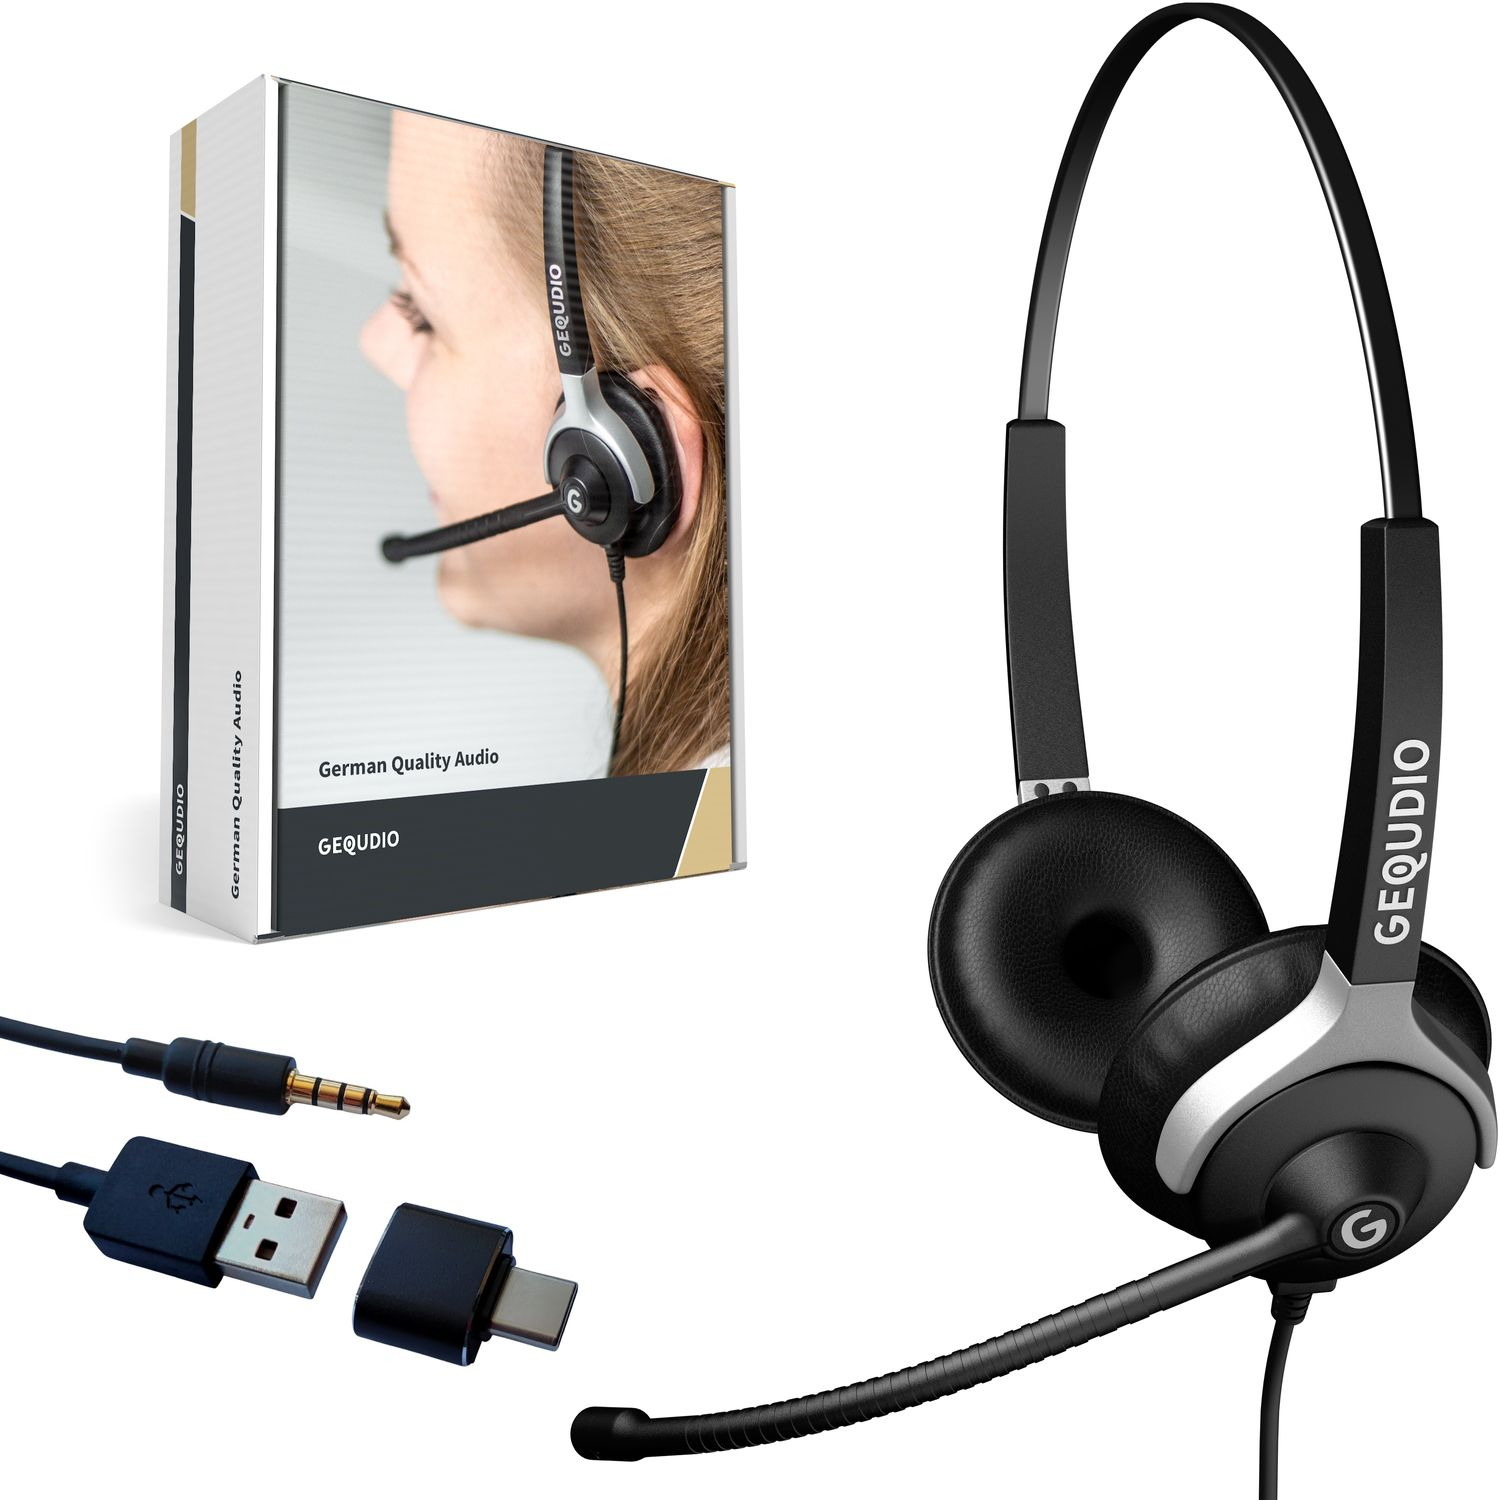 GEQUDIO Headset 2-Ohr mit für USB PC MAC, Schwarz On-ear Headset